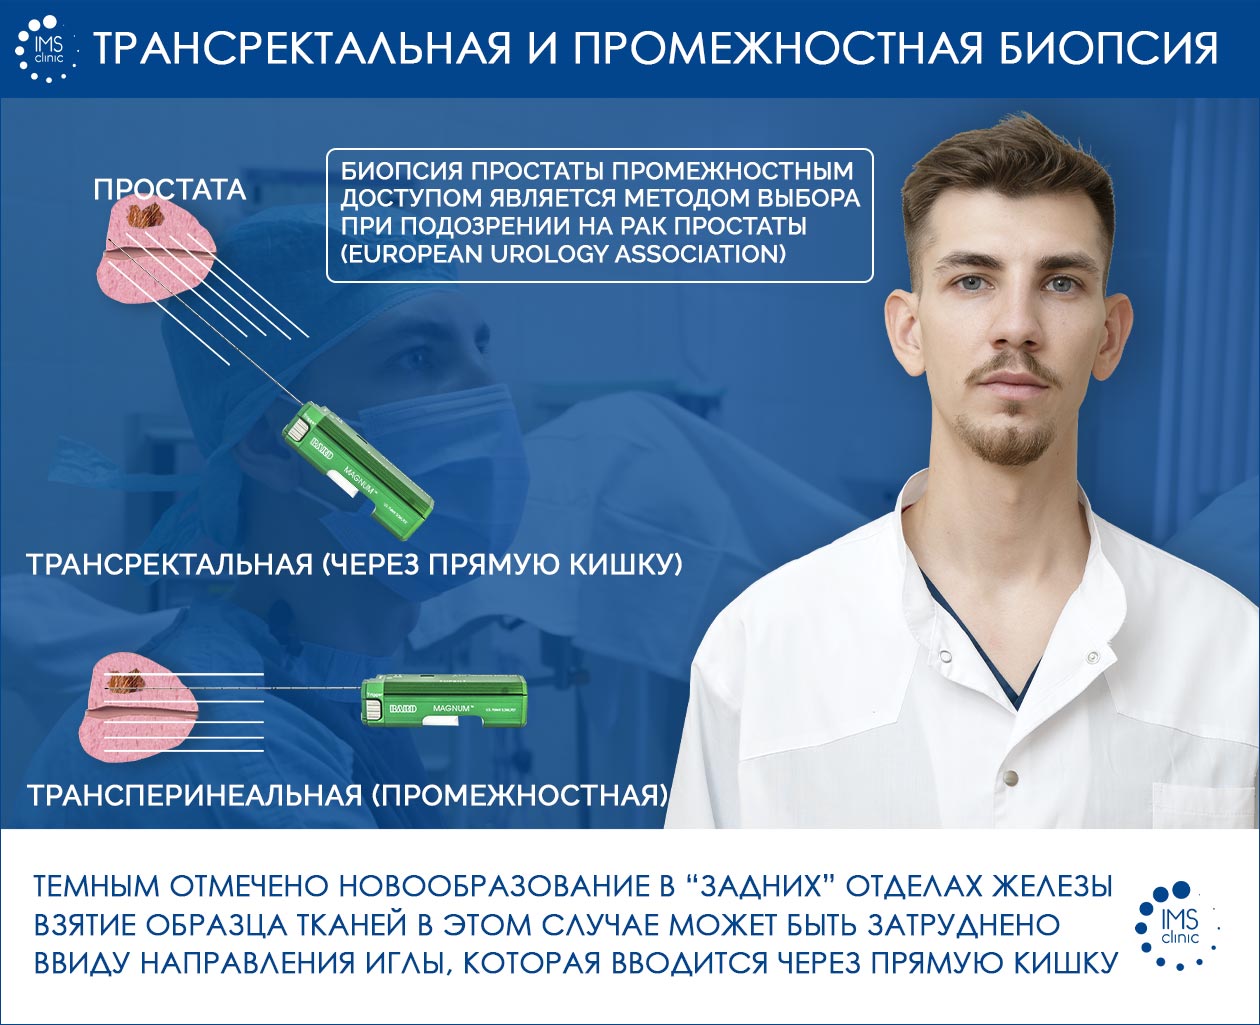 Биопсия предстательной железы в СПб, цена на биопсию простаты